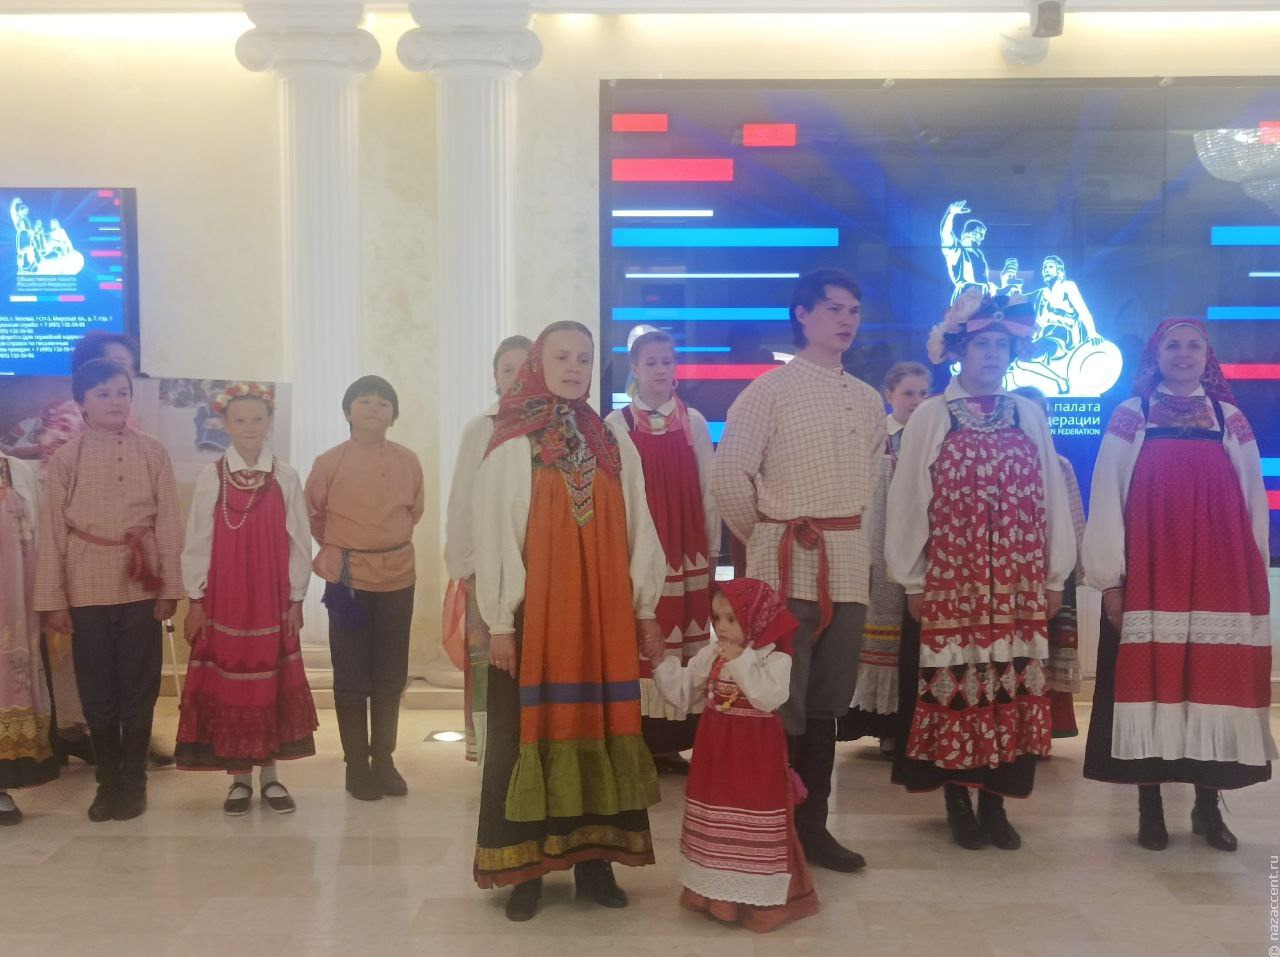 Выставка новых работ конкурса "Дети России" открылась в Москве